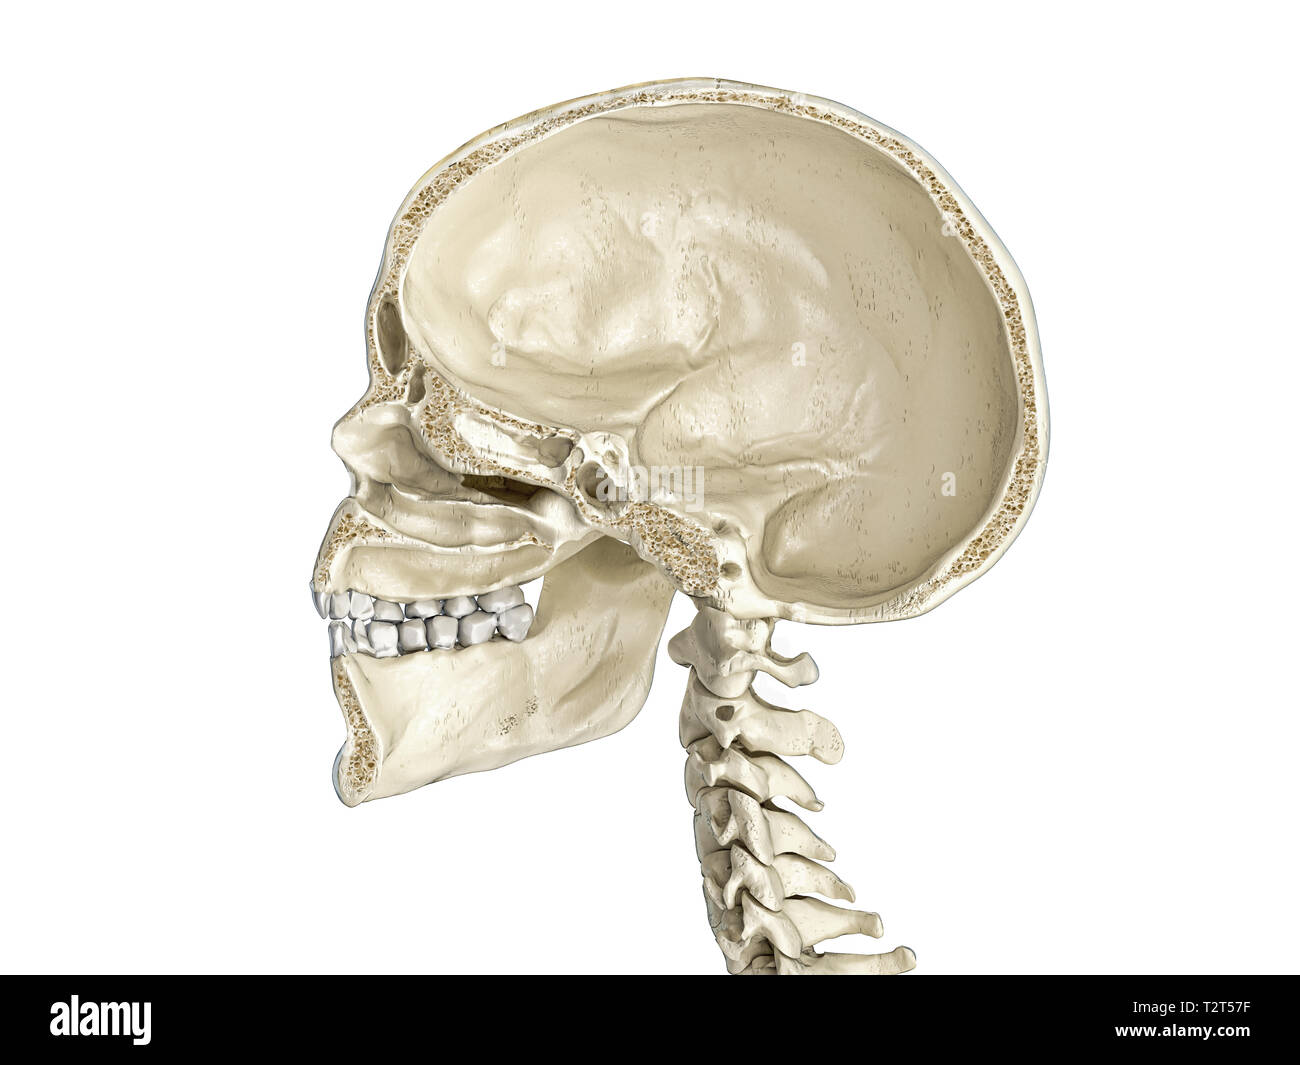 Crâne humain sagittal cross-section, vue de côté. Sur fond blanc. Banque D'Images